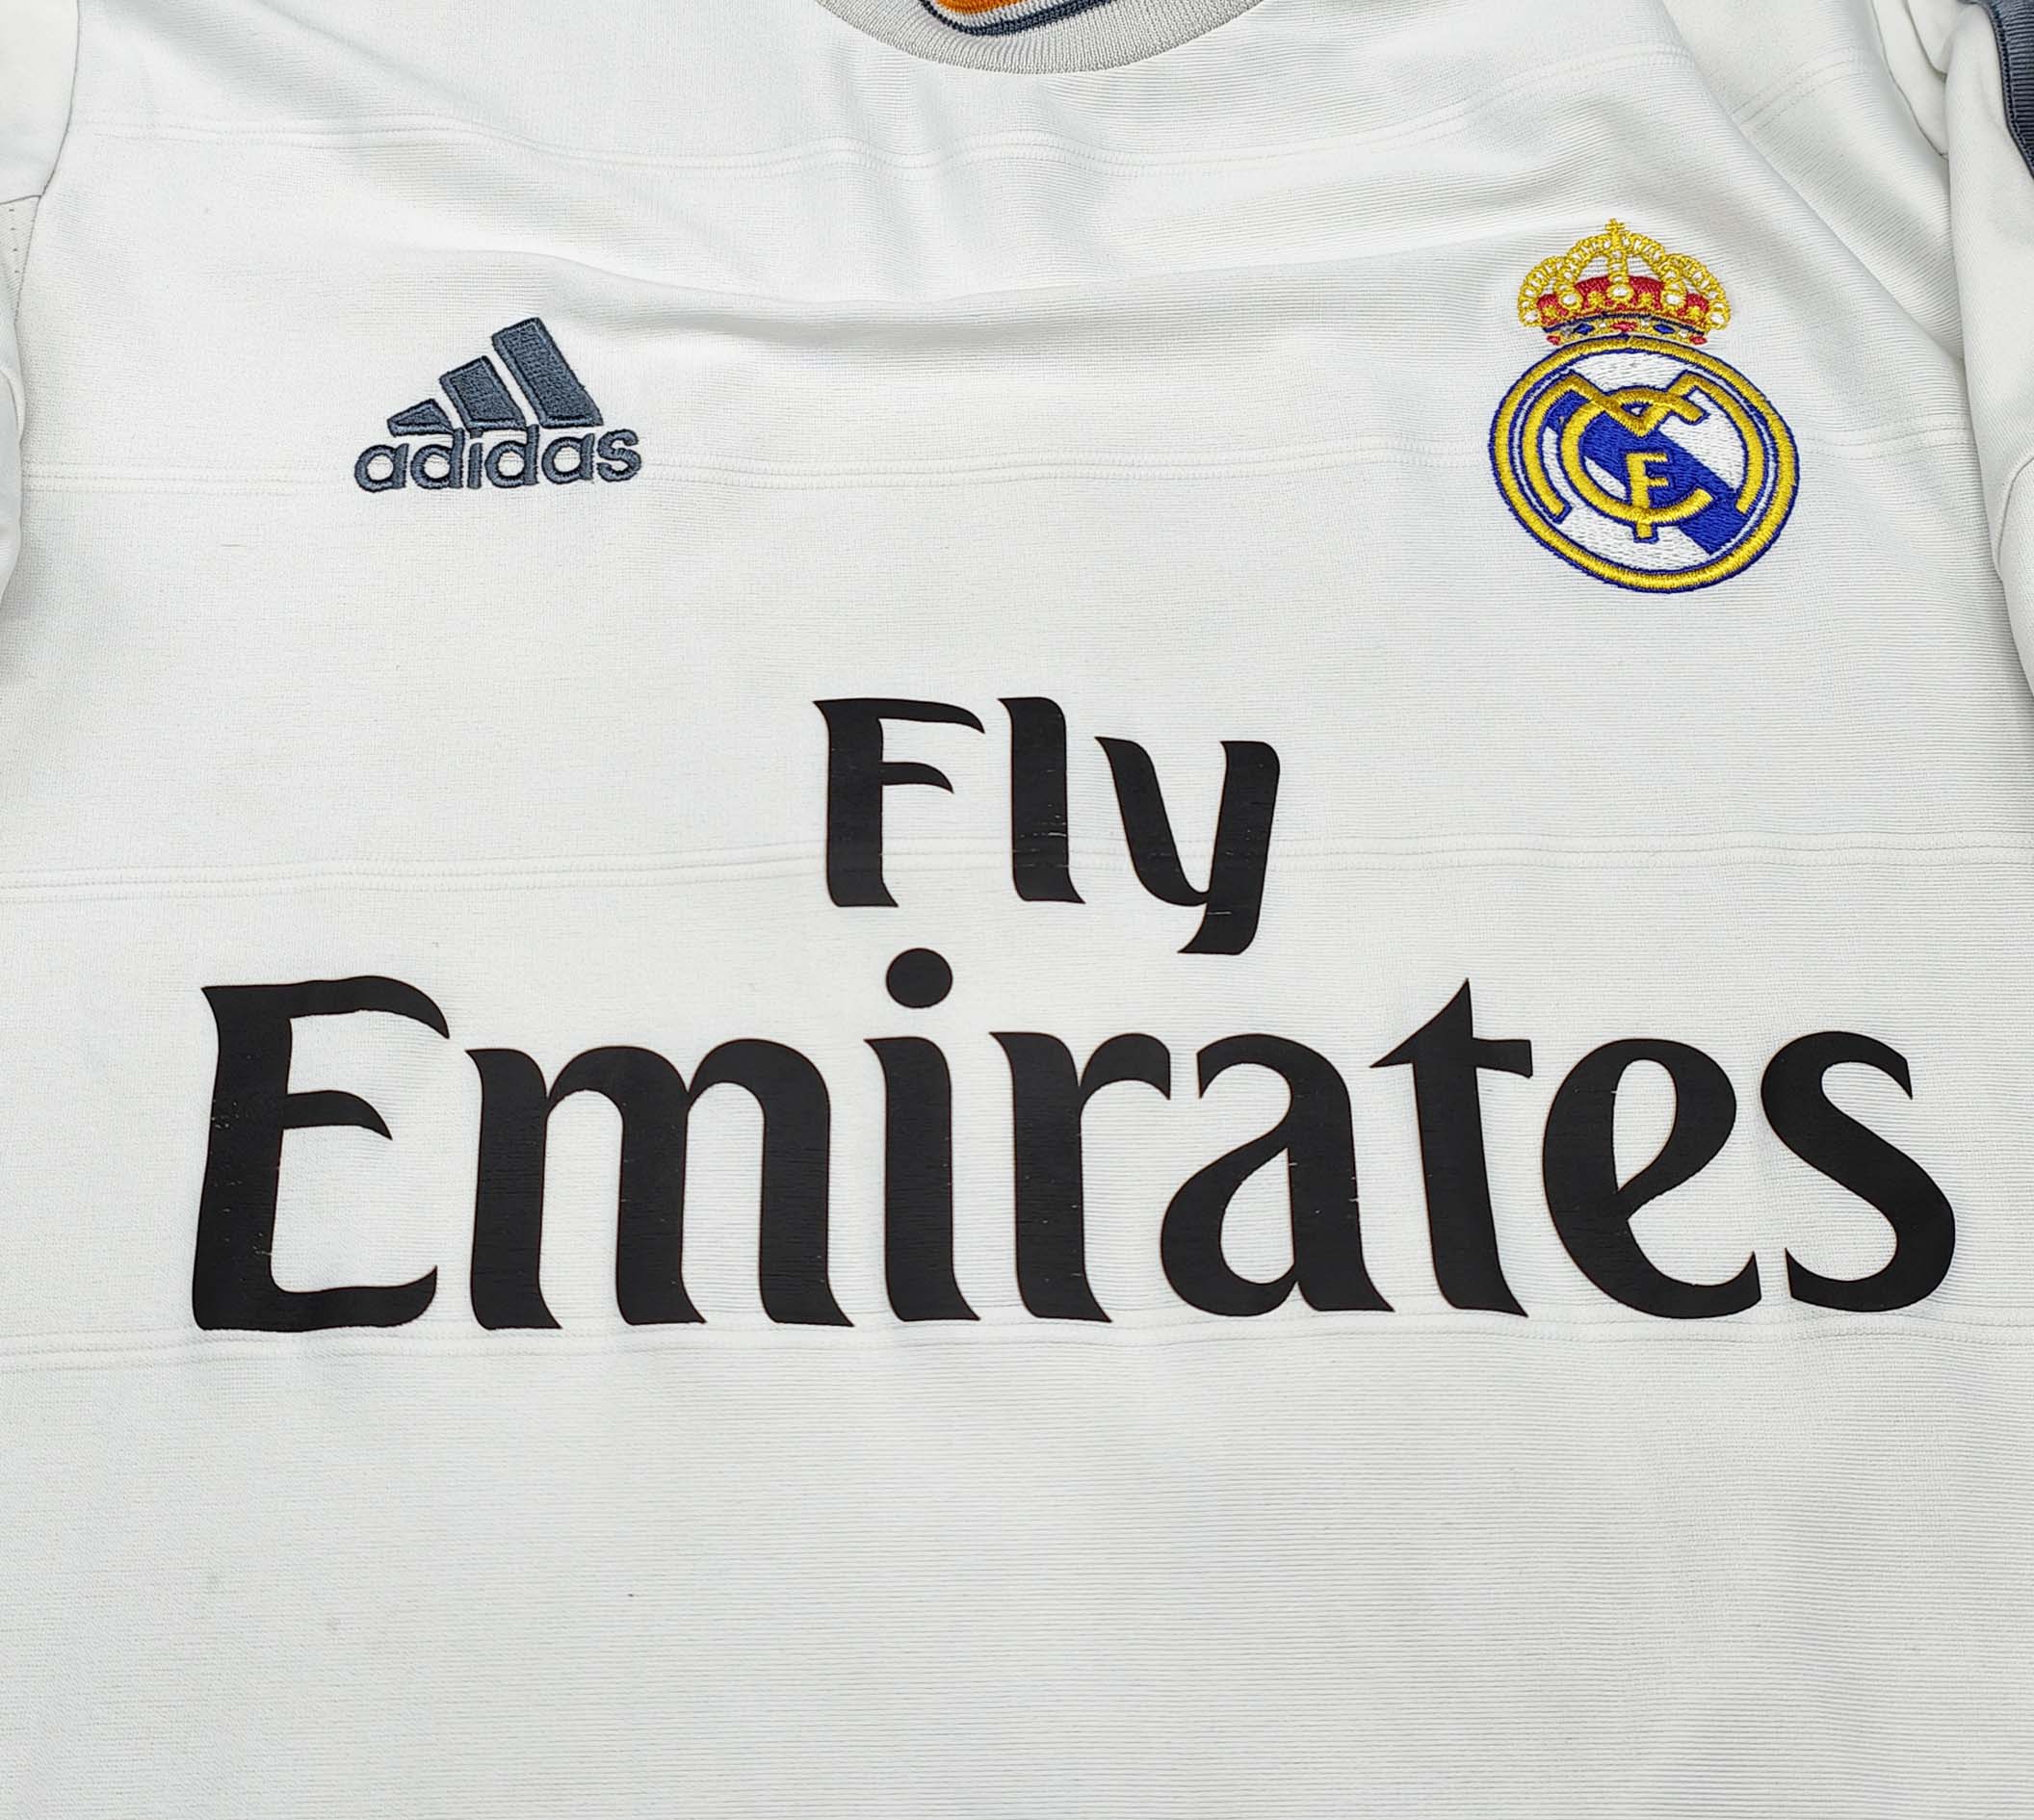 Maglia Ronaldo, l'Adidas sta già stampando la casacca con il numero 7